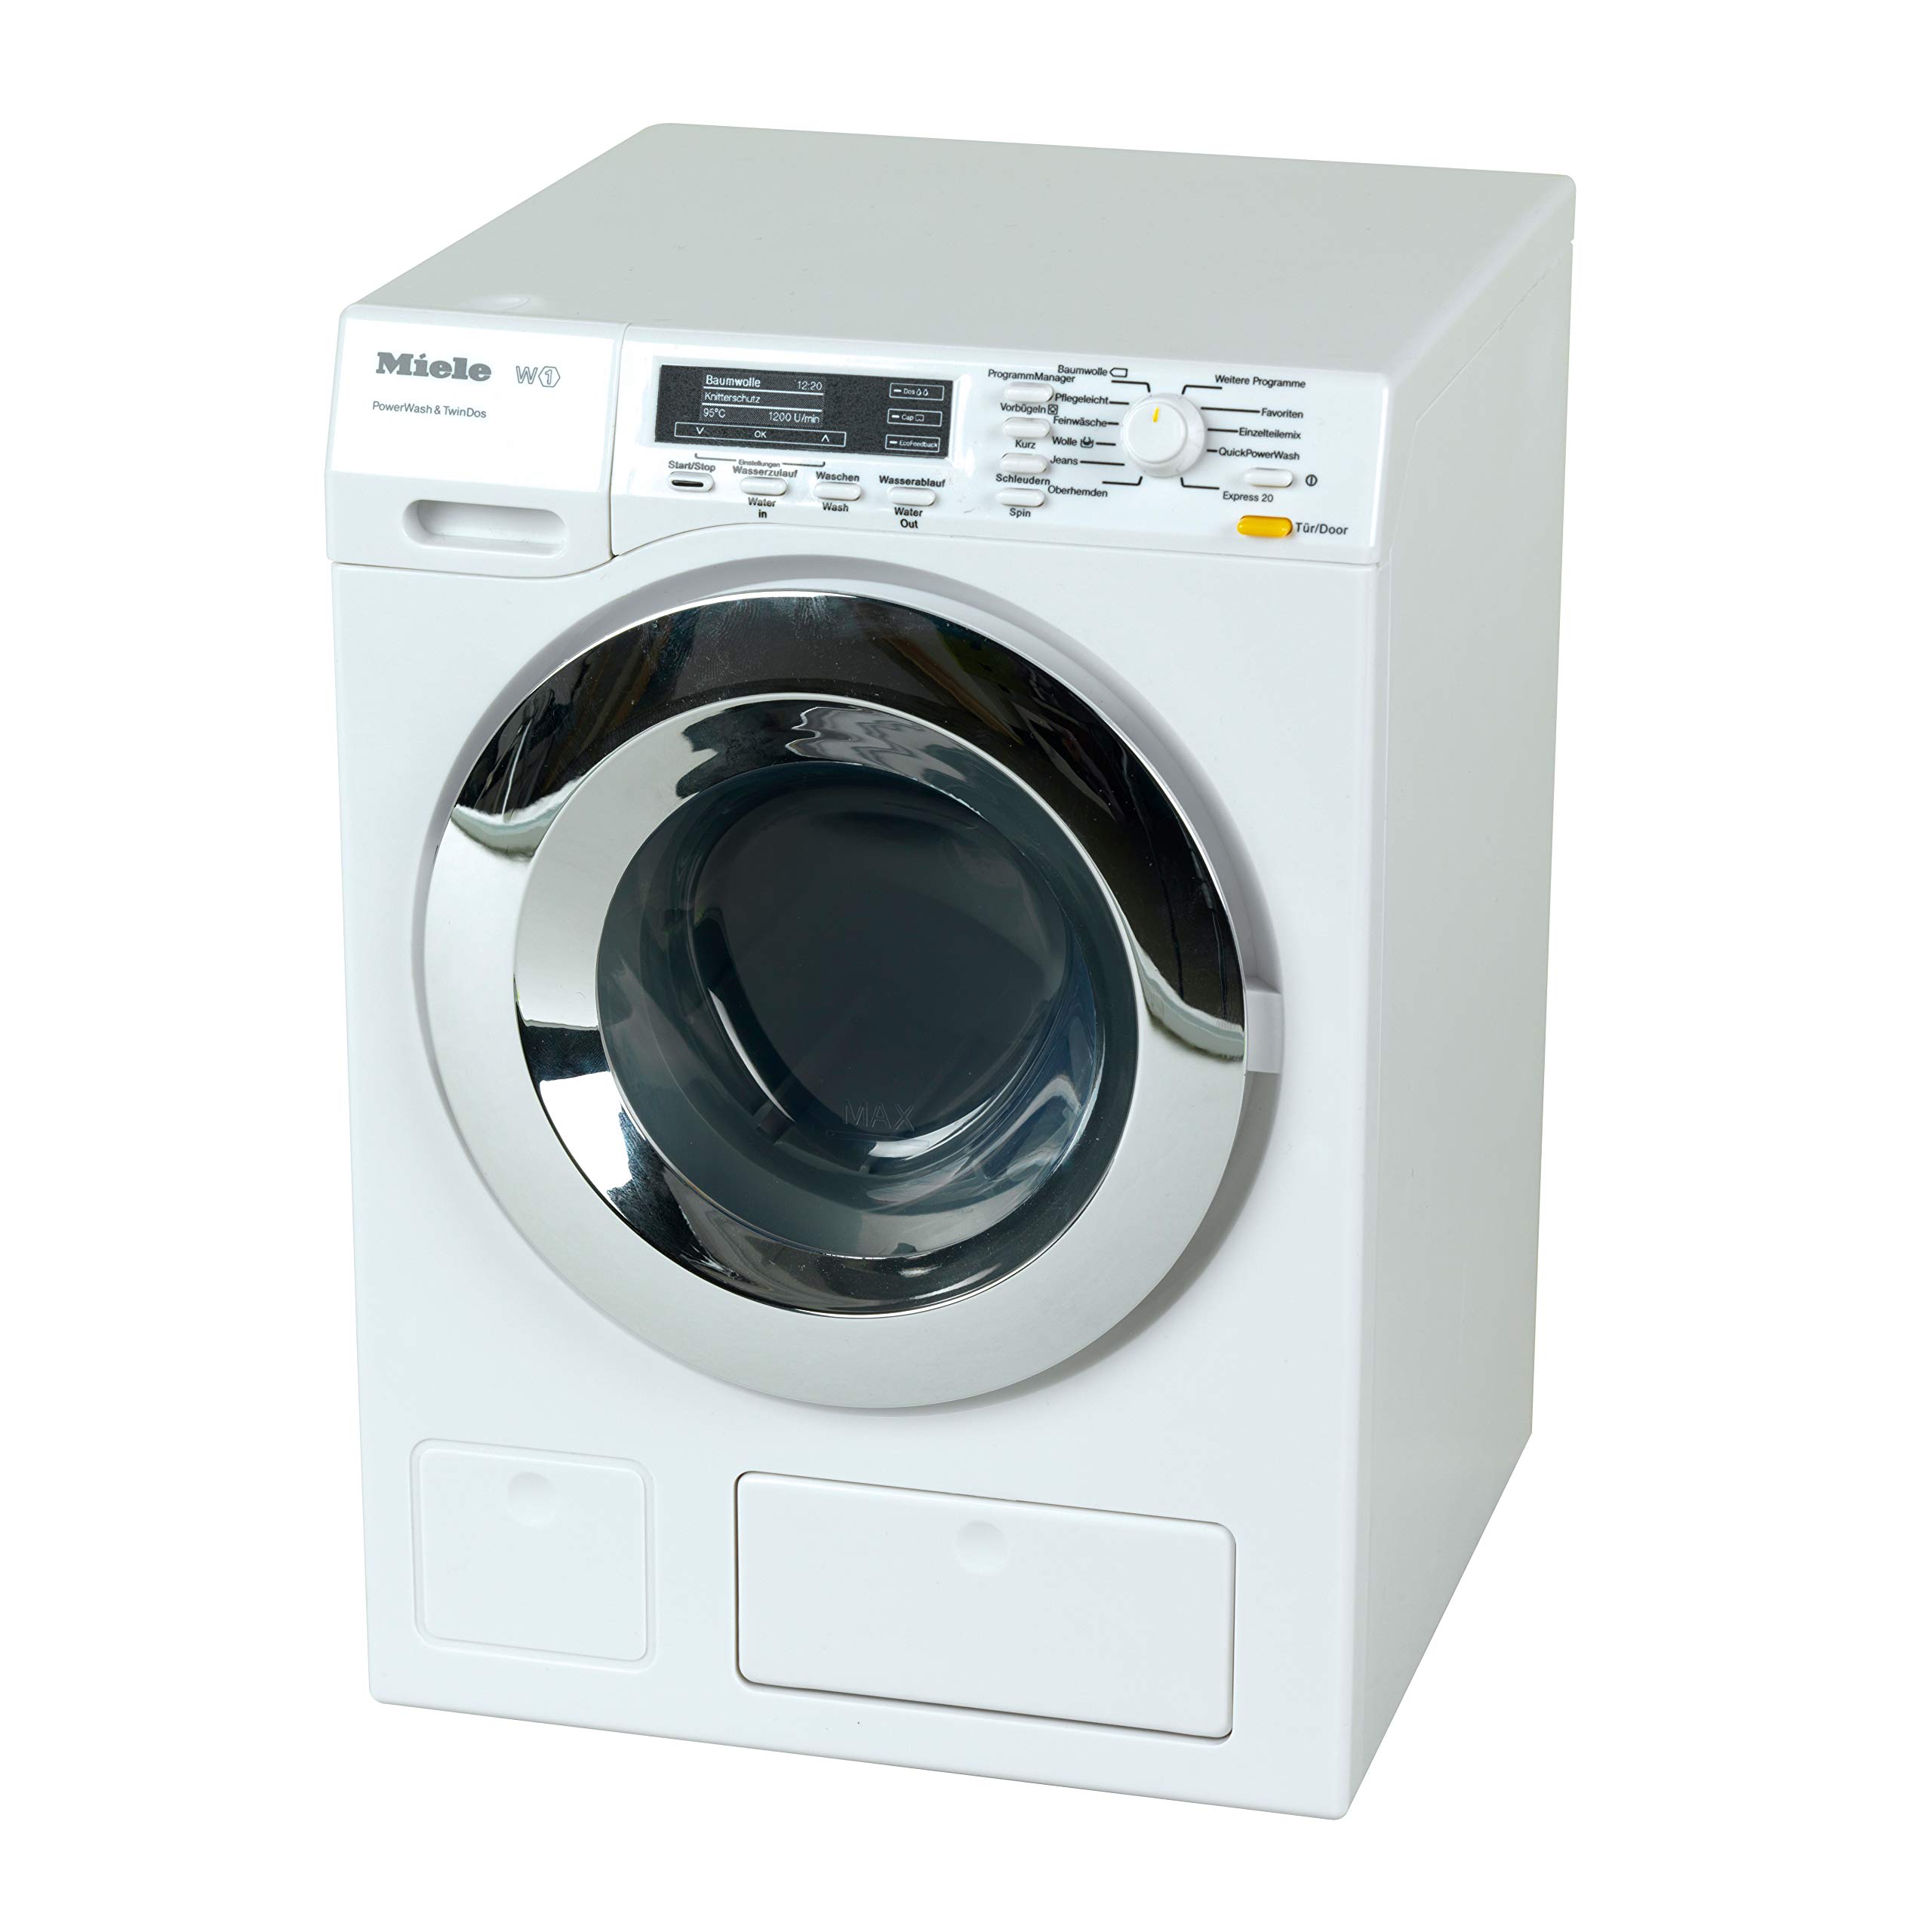 Theo Klein Front Loader Washing Machine